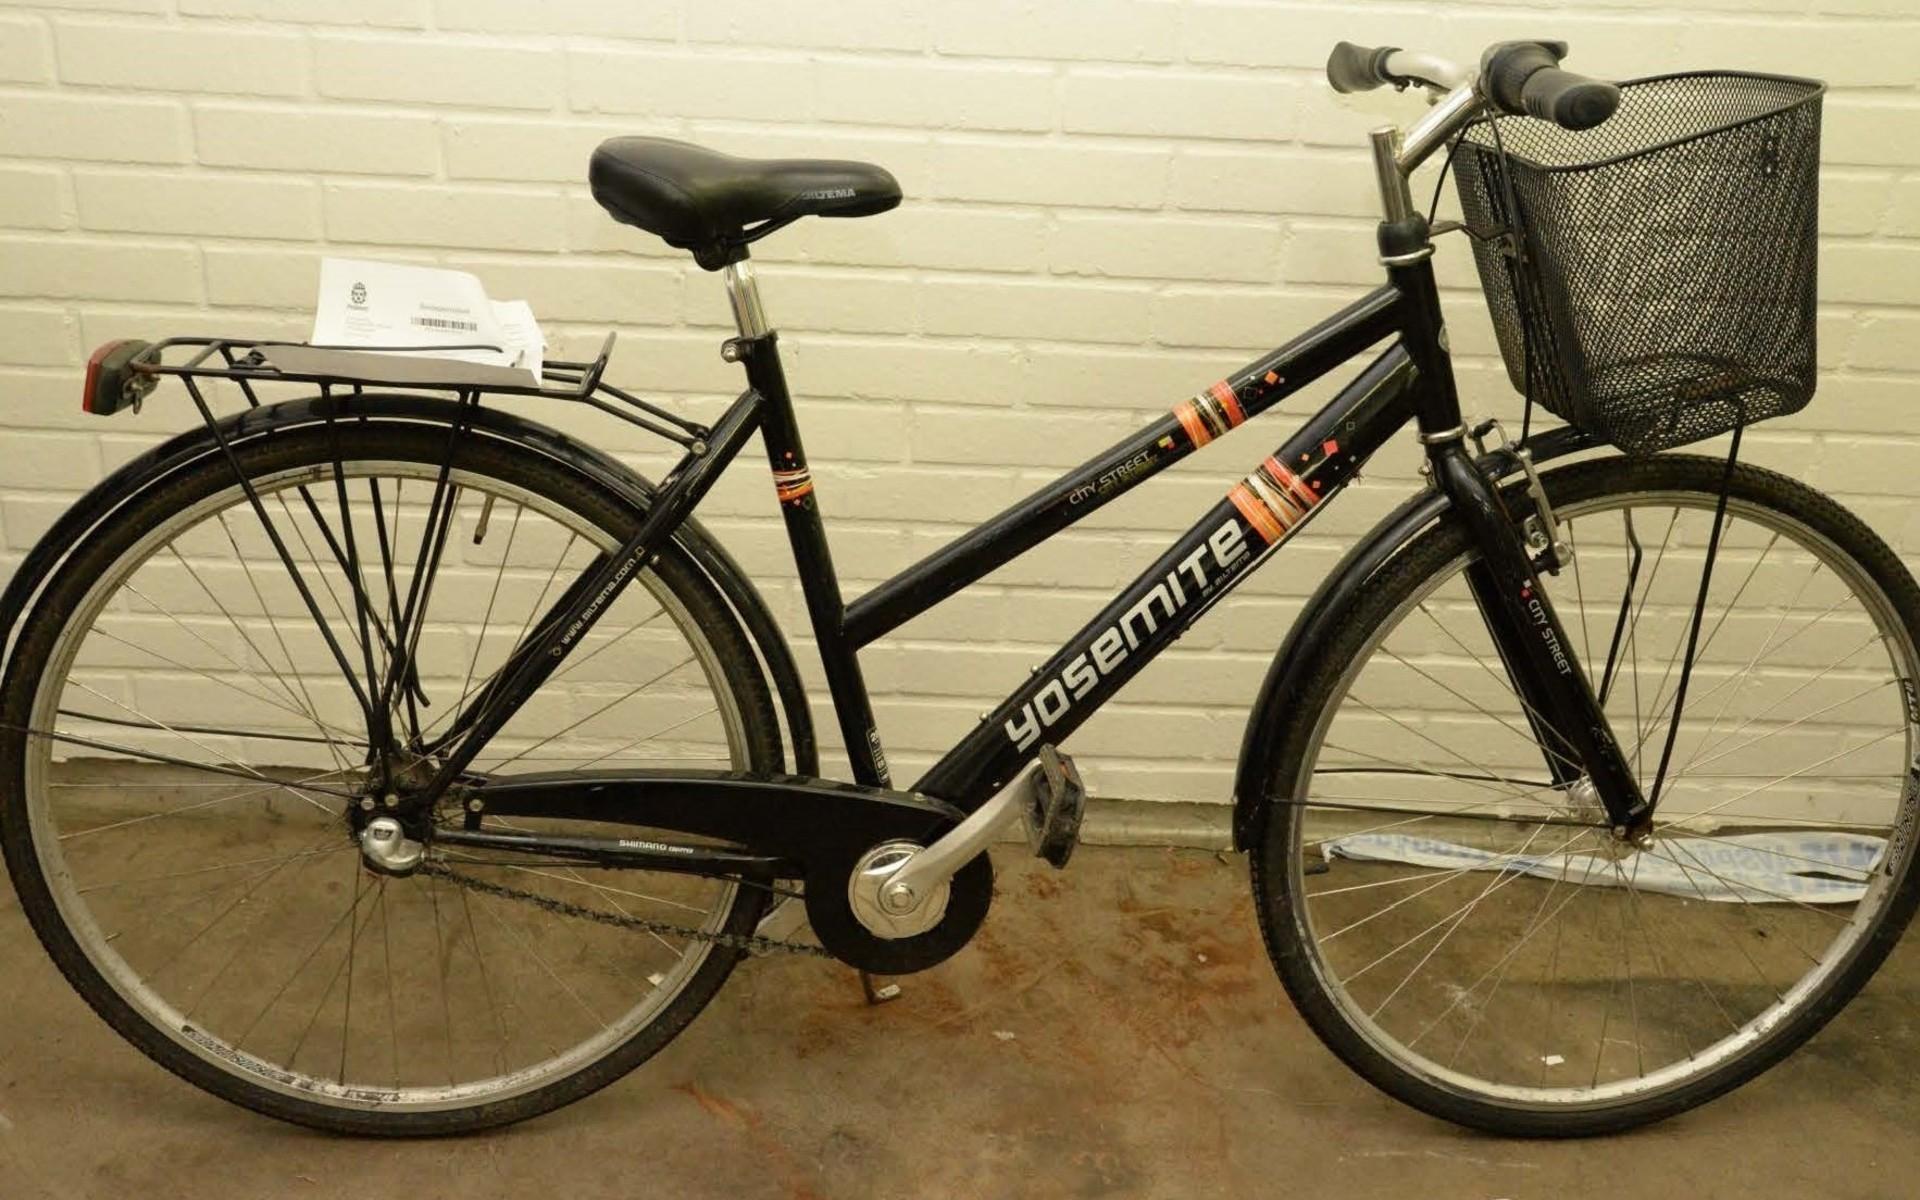 &quot;Det är även två cyklar som är intressanta i utredningen. Den ena cykeln är en svart damcykel av märket Yosemite City Street med en svart cykelkorg&quot; skriver polisen.